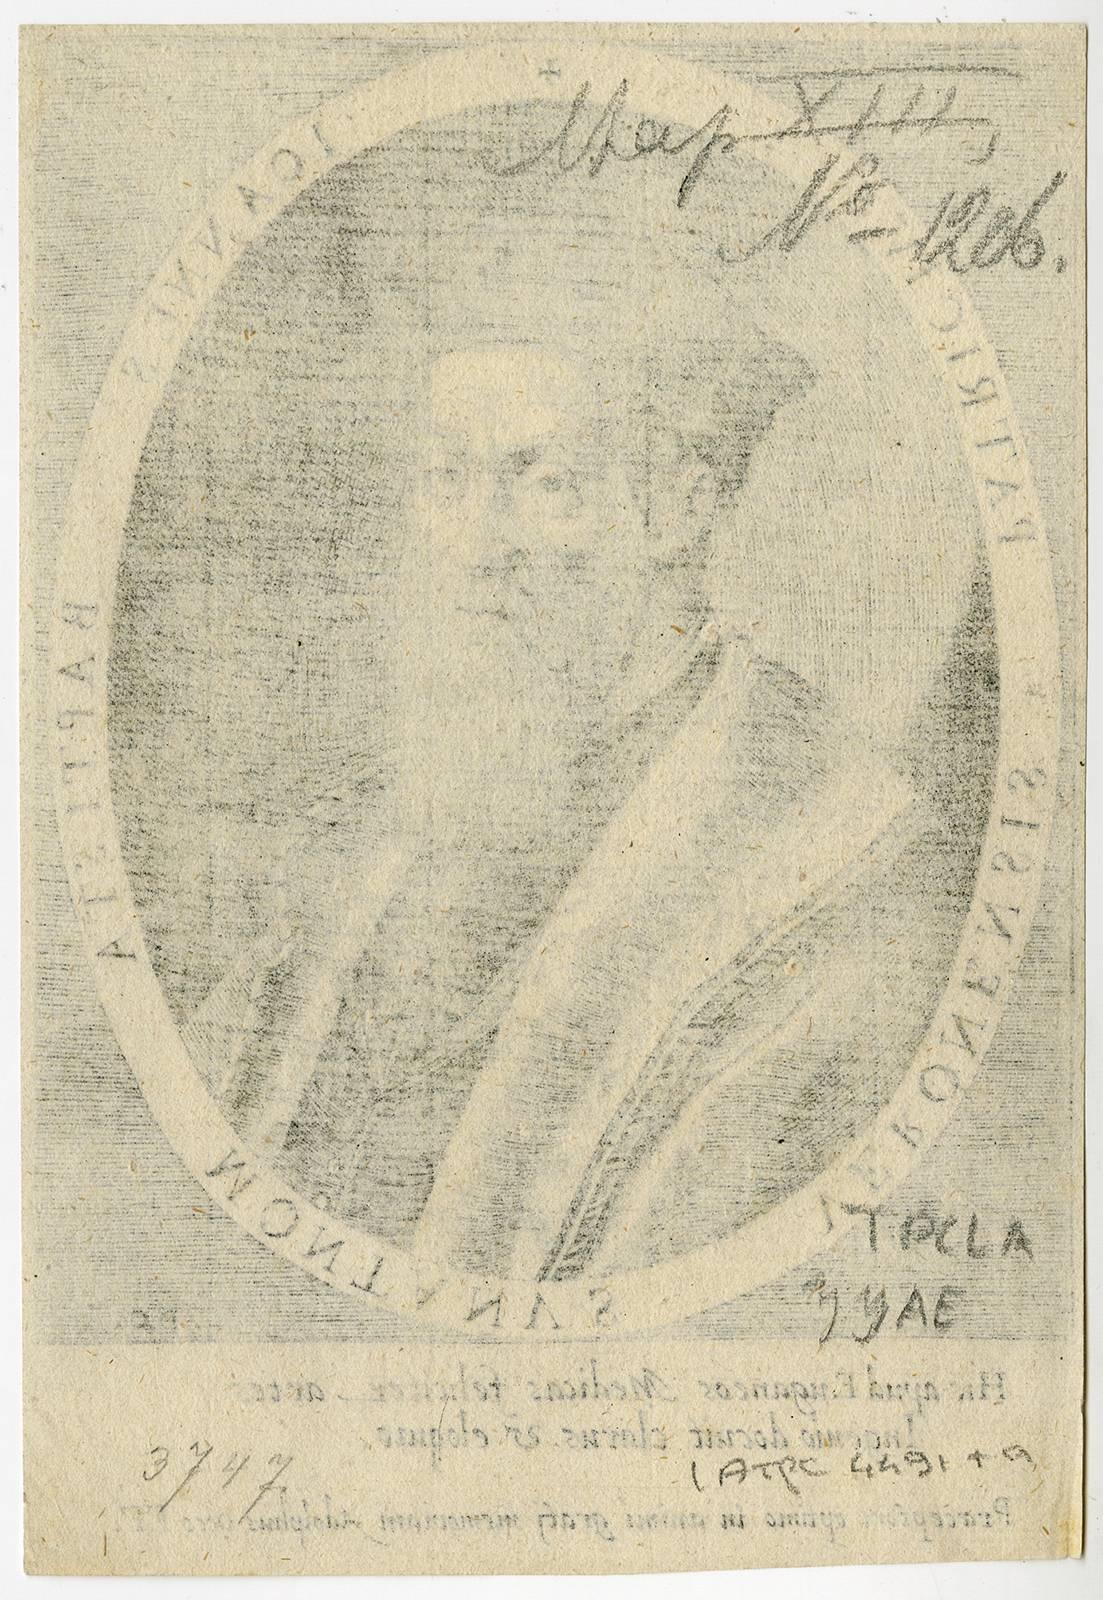 Ioannes Baptista Montanus Veronensis patricius. - Print by Domenicus Custos